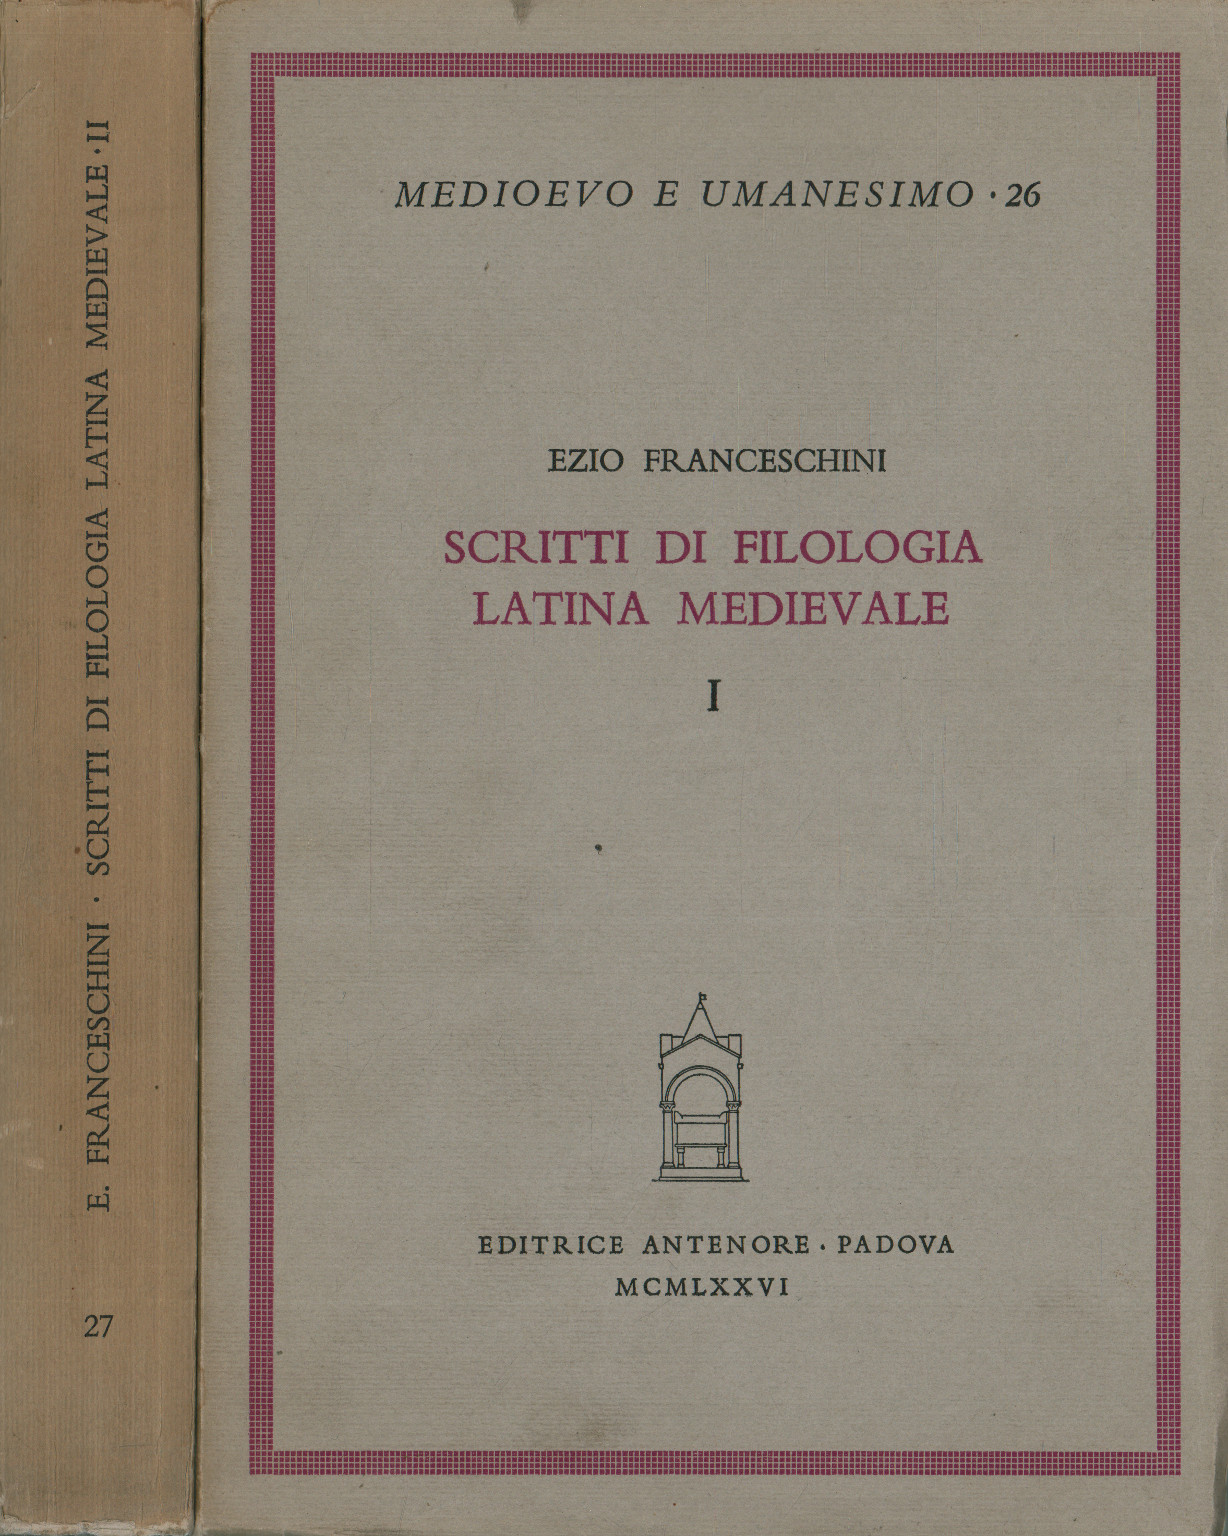 Écrits de philosophie latine médiévale (2 Volumes), Ezio Franceschini, Écrits de philologie latine médiévale (2